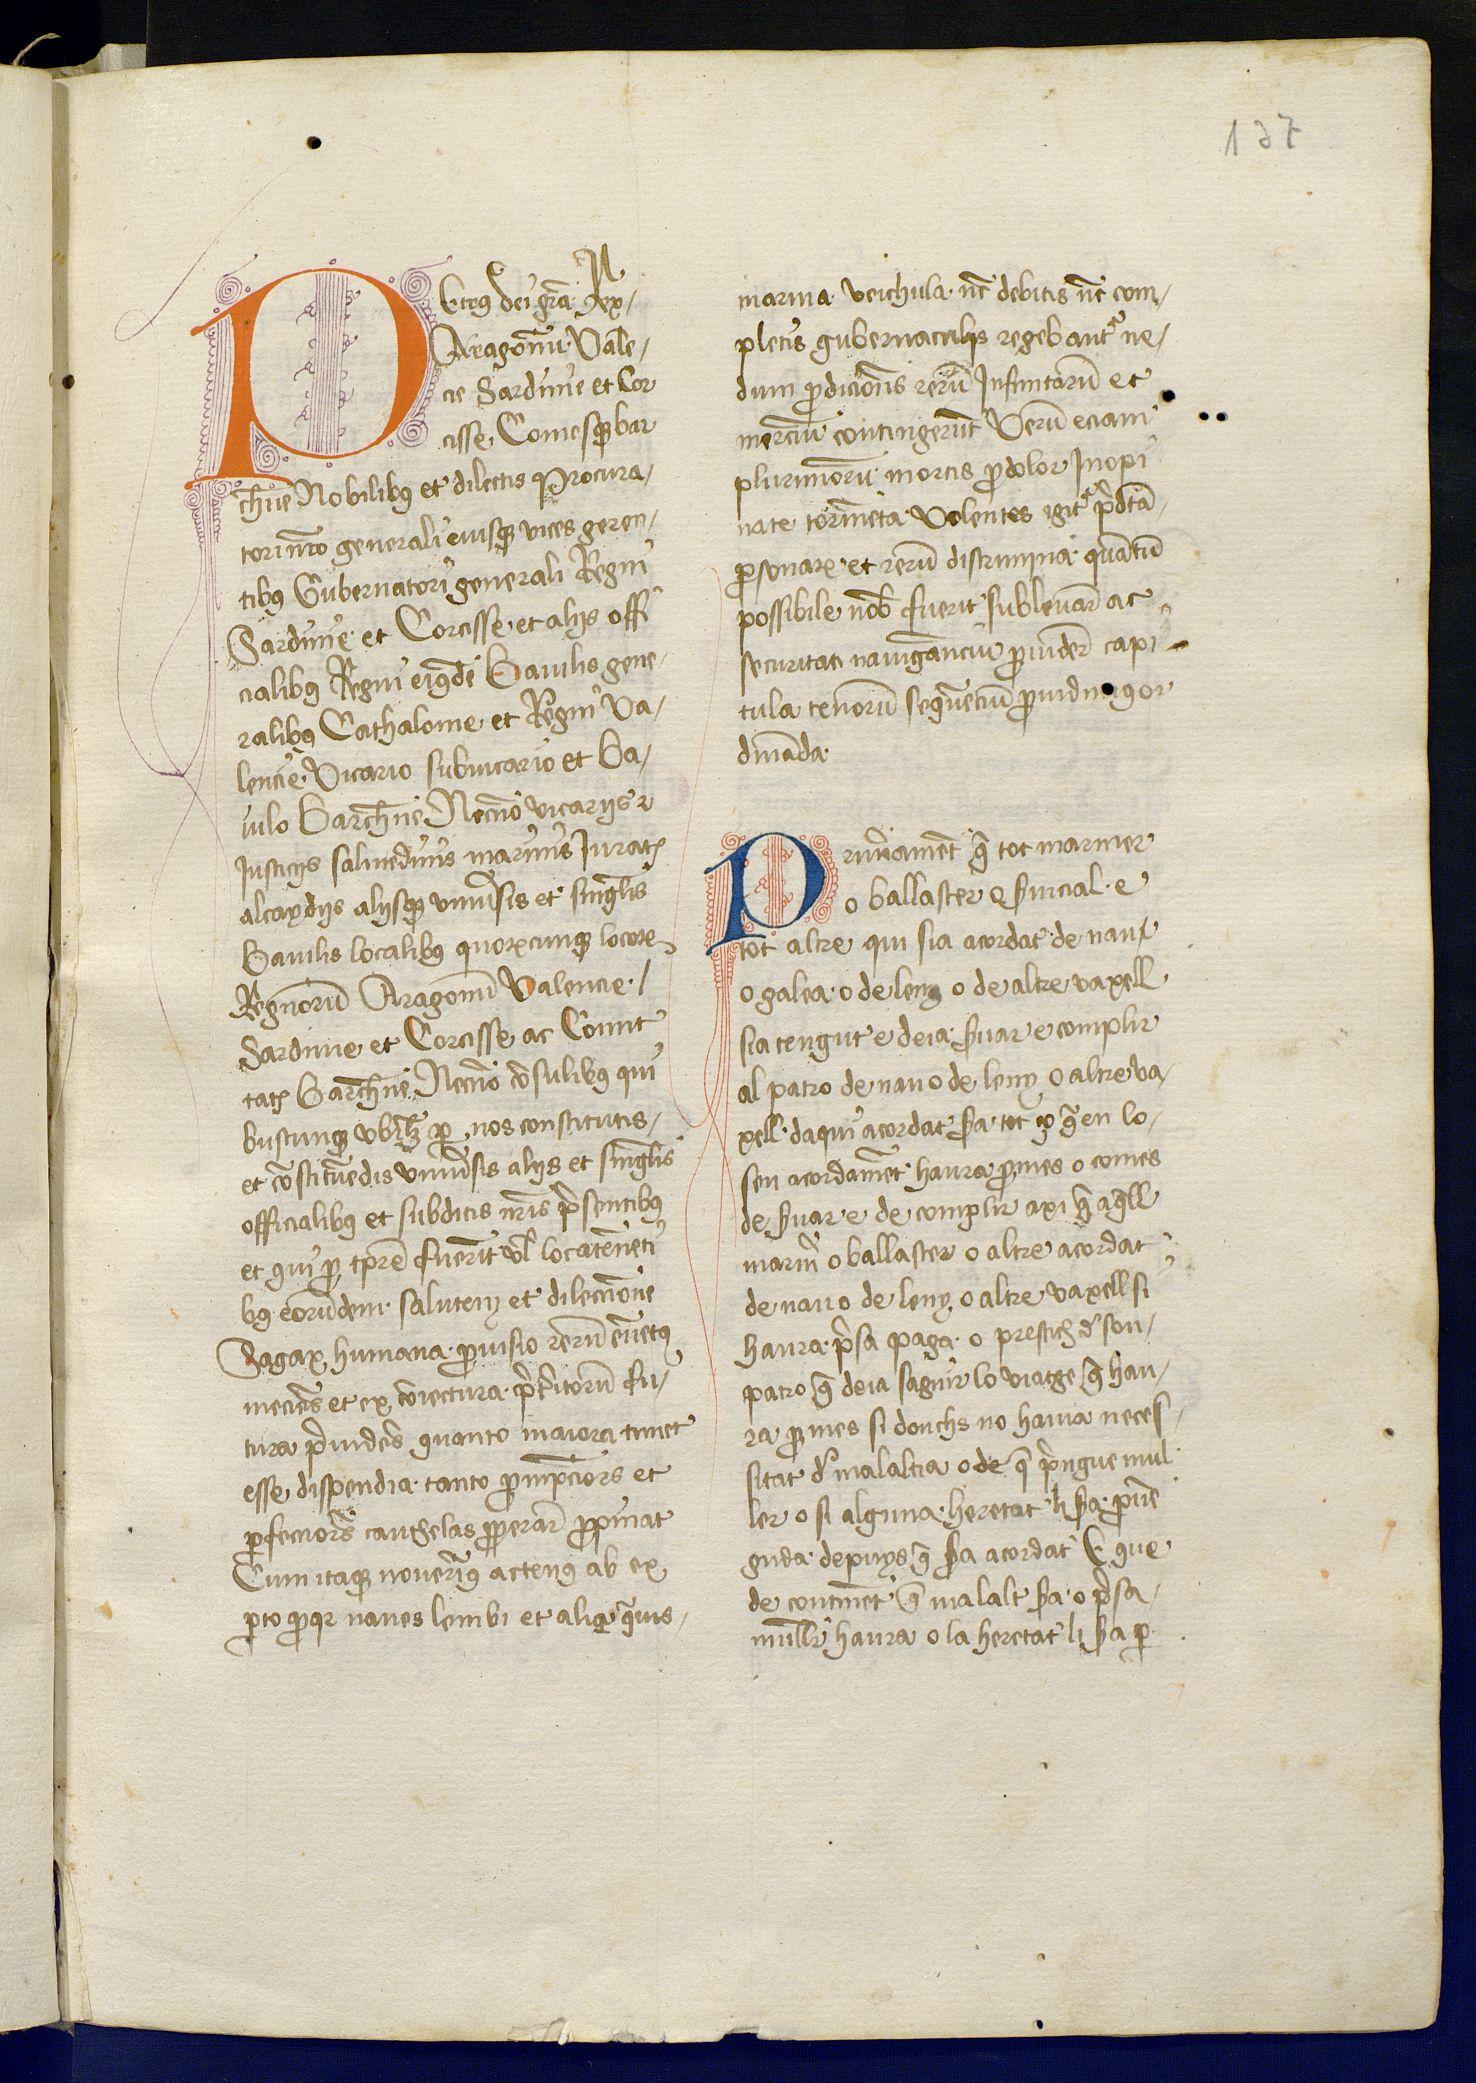 Imatge Llibre del Consolat de Mar, f.137r, inici dels capítols de Pere III de l’any 1340. Manuscrit conservat a l’AHCB C06-B080, part del Codi jurídic de navegació comercial vigent a l'edat mitjana